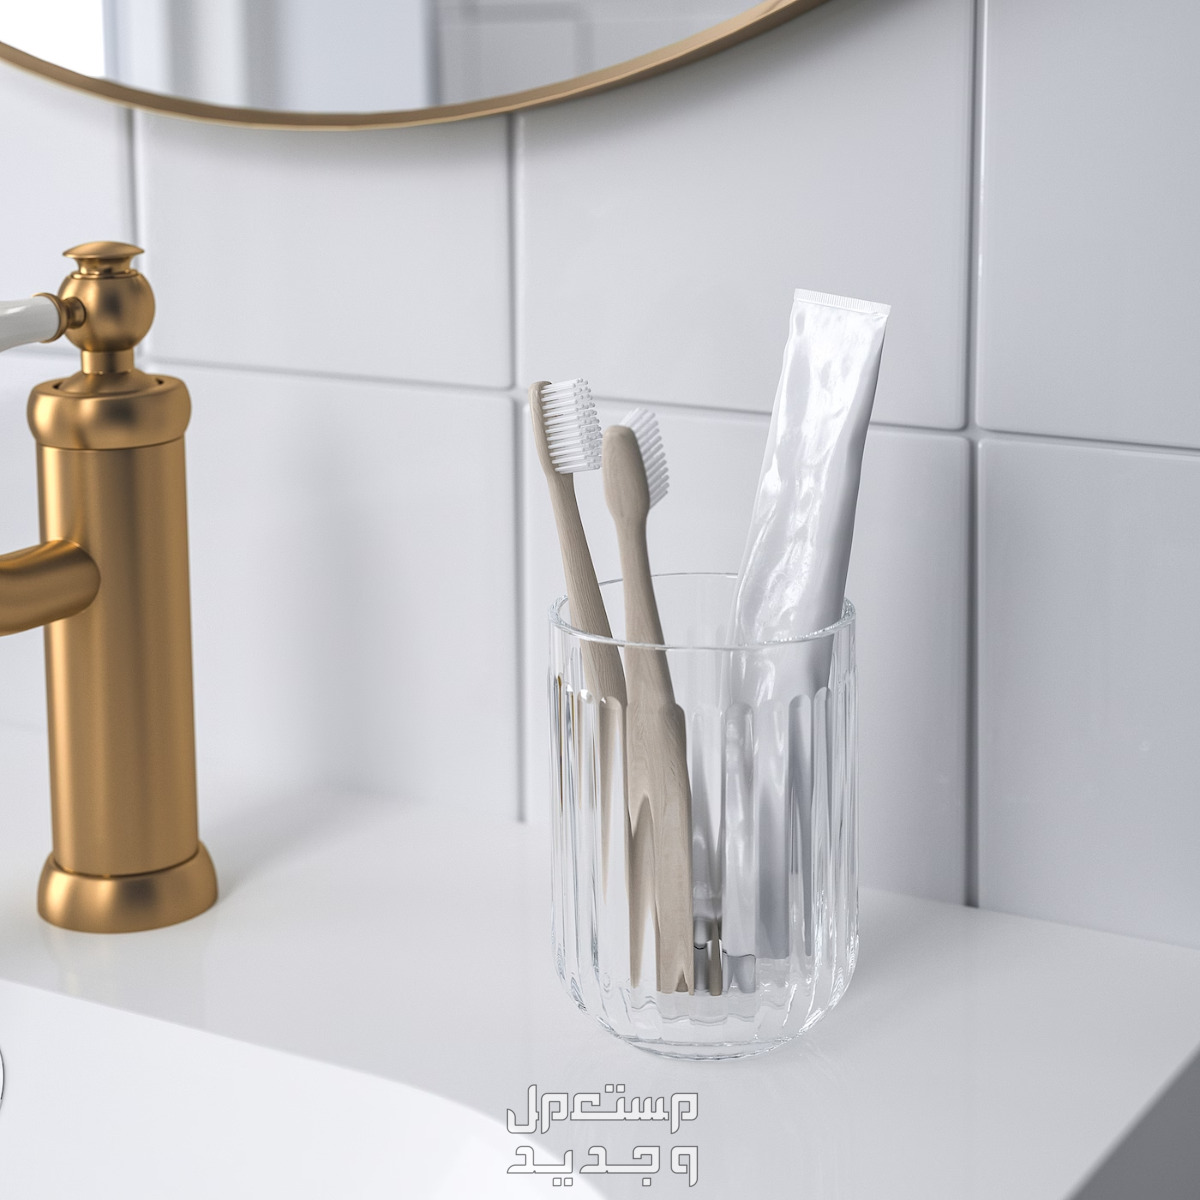 تعرفي على أفضل 10 طرق لتنظيف حمام المنزل في تونس تنظيف حامل فرش الأسنان